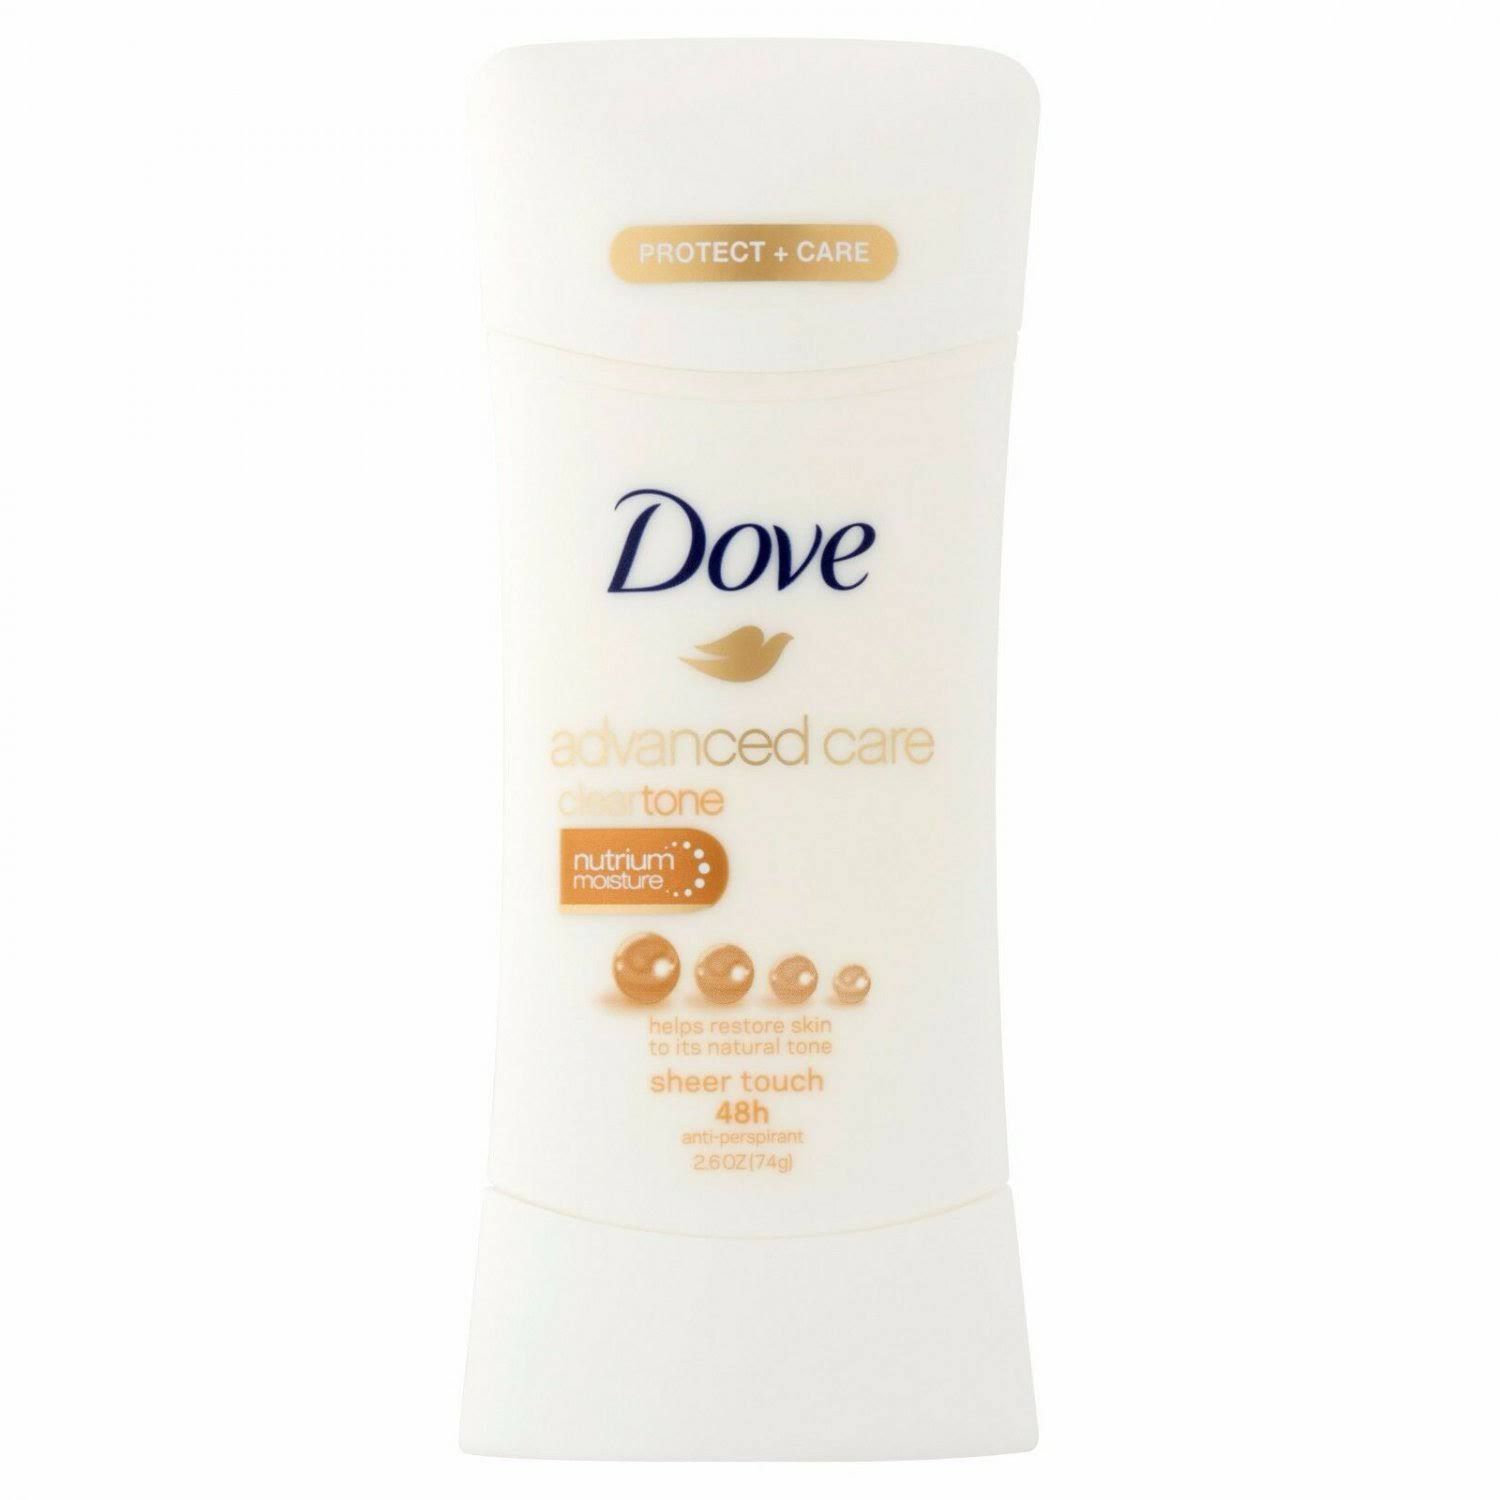 Dove Advanced Care Cleartone 48H Anti-Perspirant Deodorant - 74g